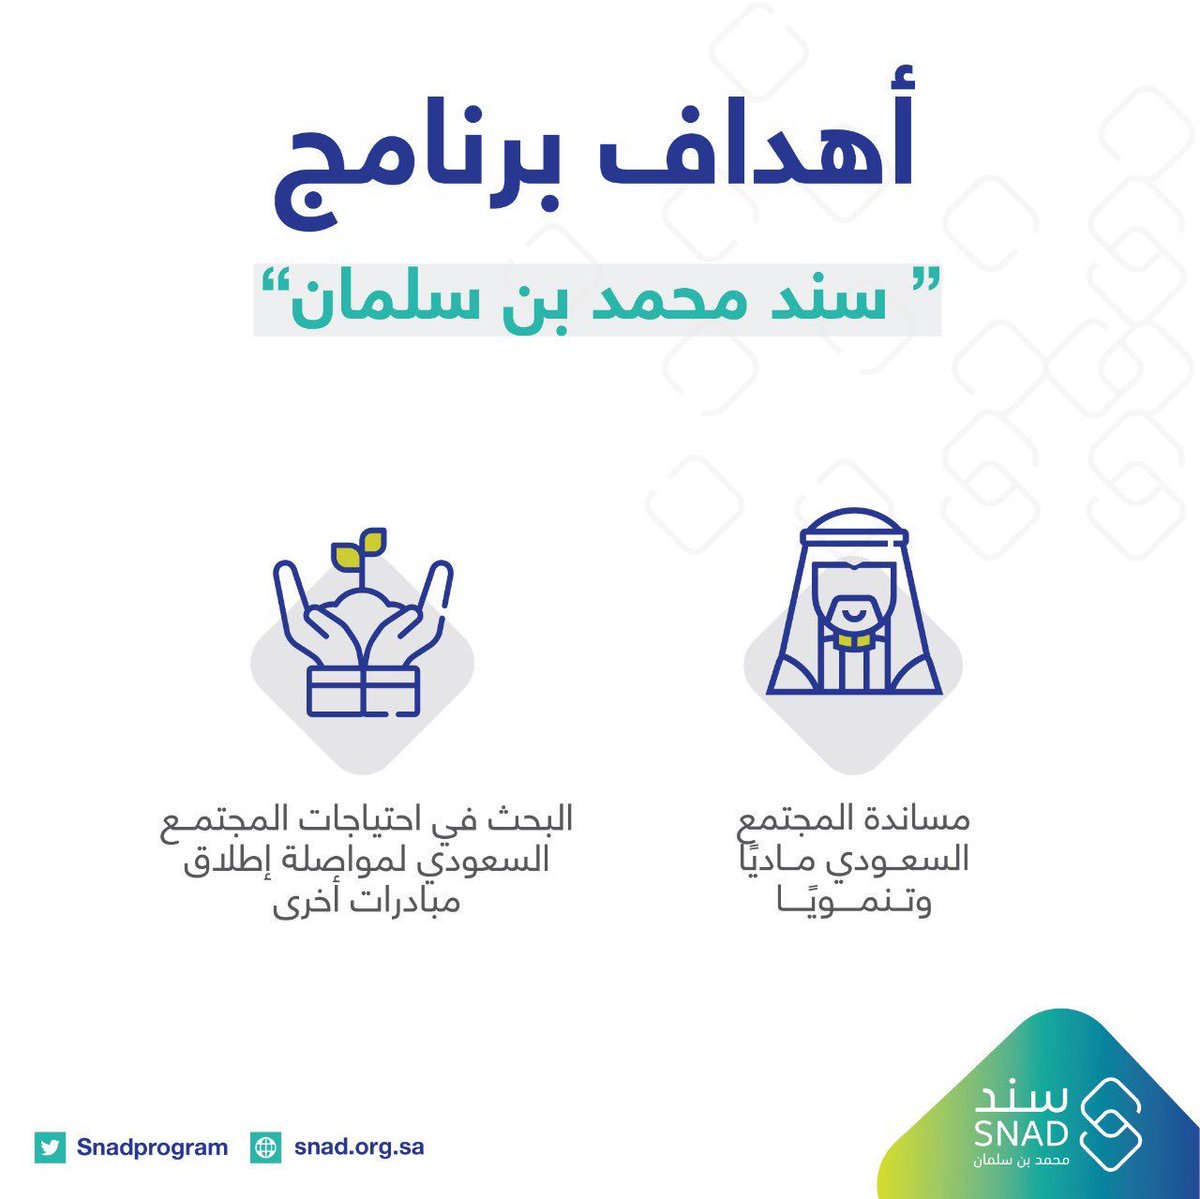 تطبيق سند السعودي 1443 هـ | رابط التسجيل للحصول على الدعم النقدي للزواج